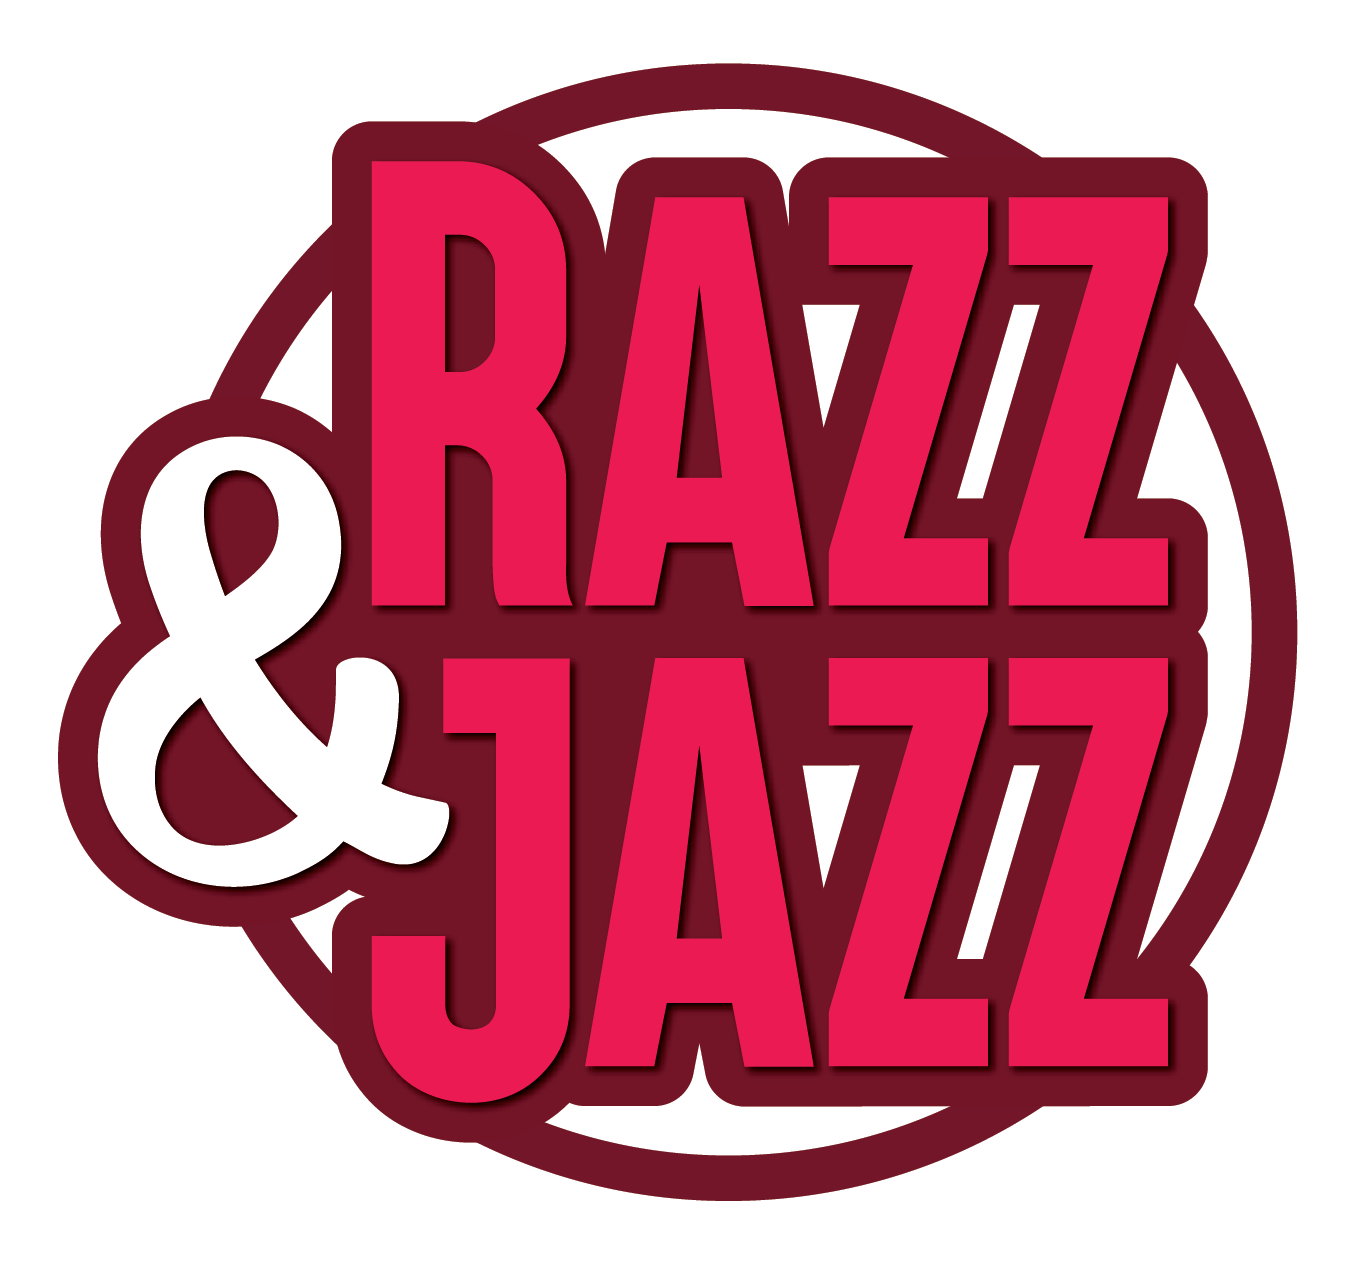 Razz&Jazz Logo(1)